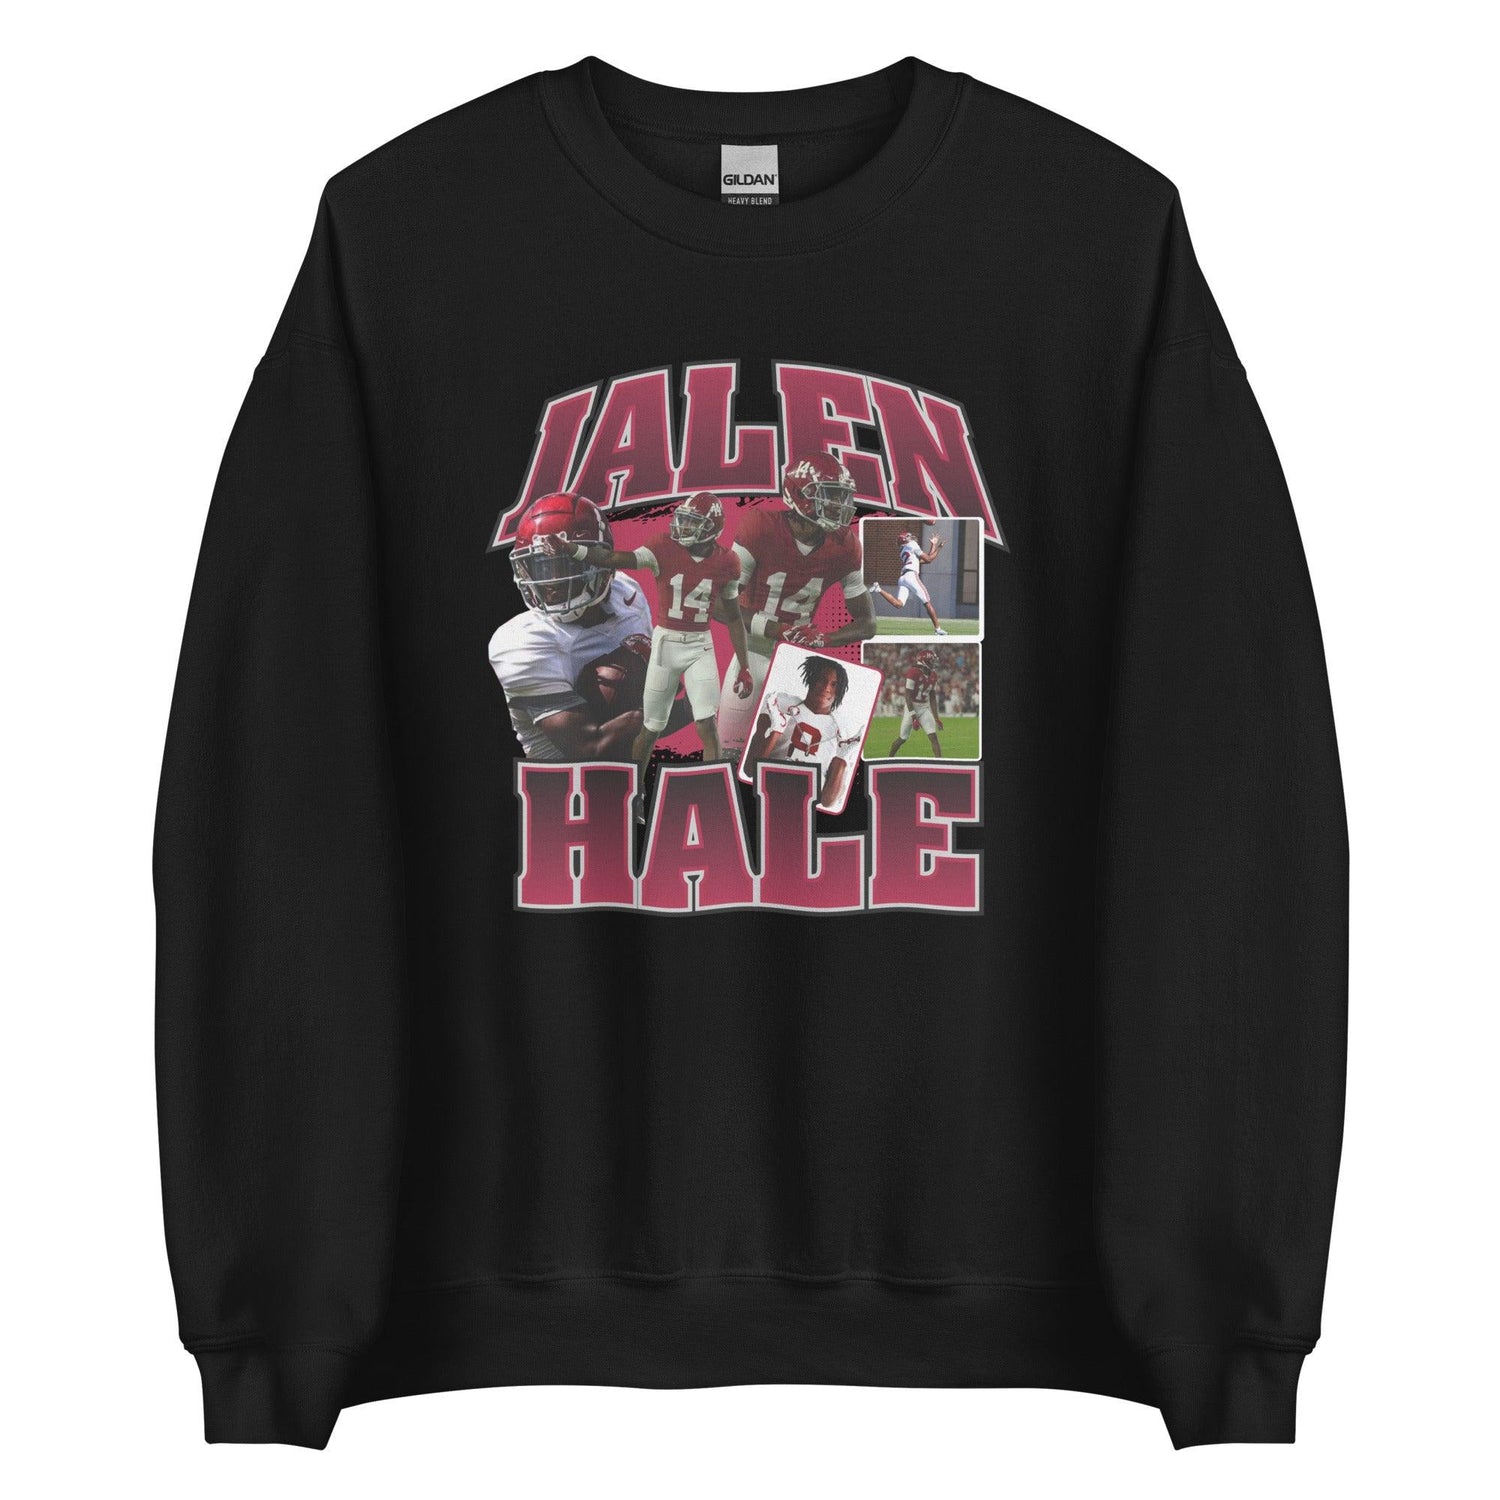 Jalen Hale "Vintage" Sweatshirt - Fan Arch